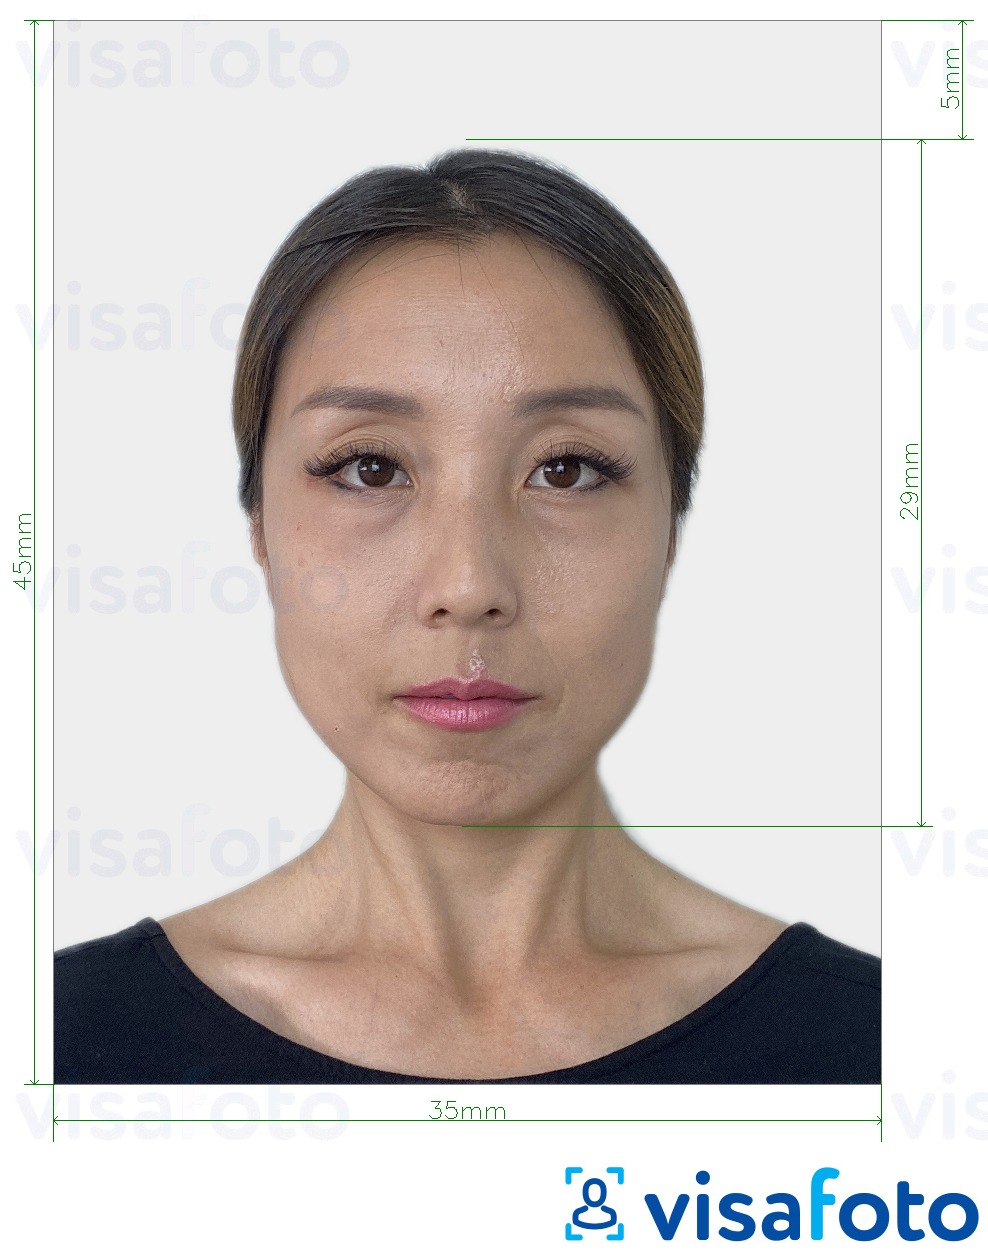 Voorbeeld van foto voor Japan e-visum 35x45 mm met exacte maatspecificatie